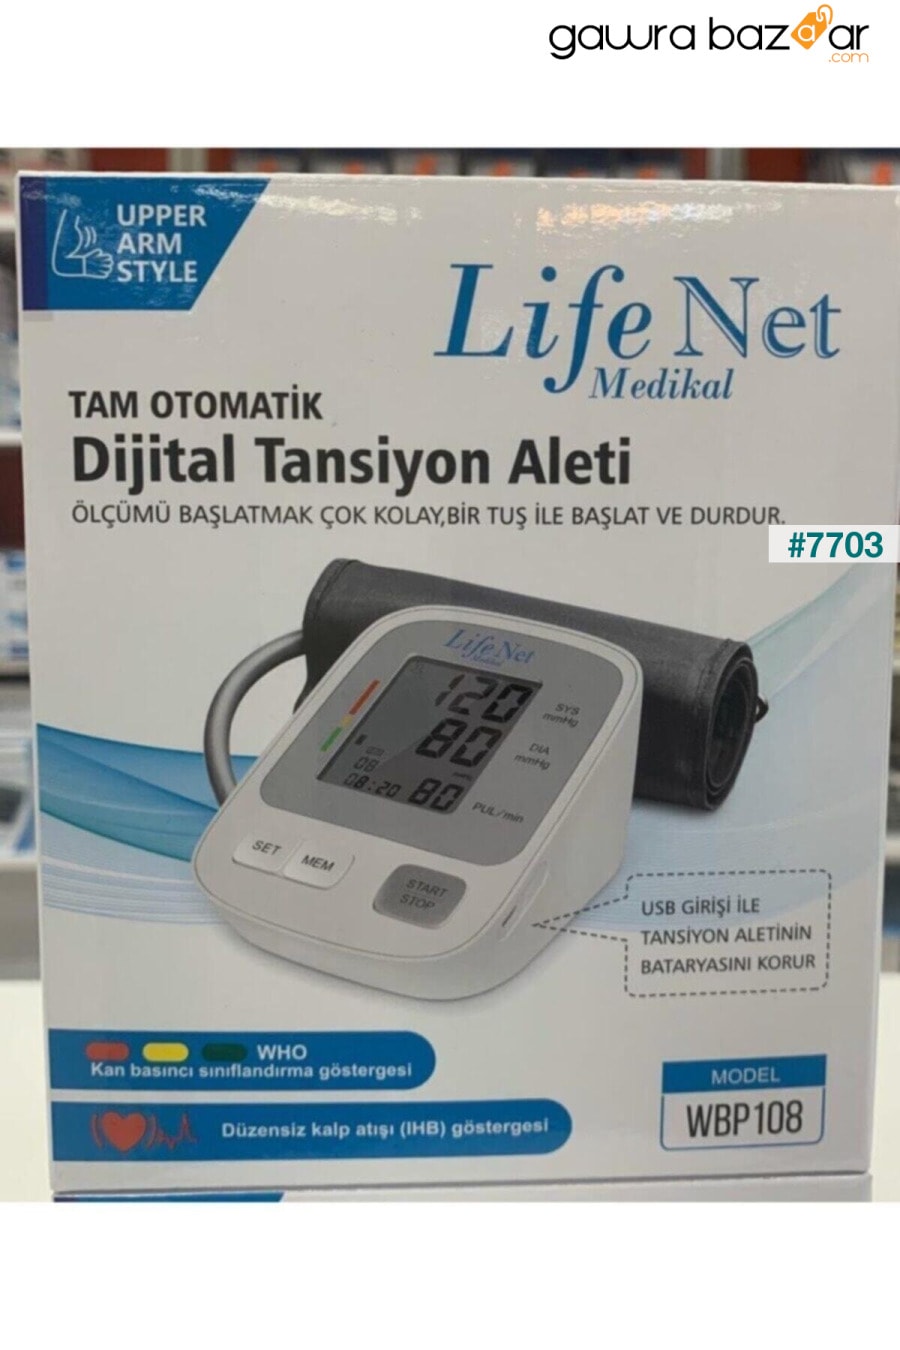 جهاز مراقبة ضغط الدم ، جهاز مراقبة ضغط الدم في أعلى الذراع ، جهاز مراقبة معدل ضربات القلب ، Wbp-108 مع مدخل USB. Life Net Medikal 2